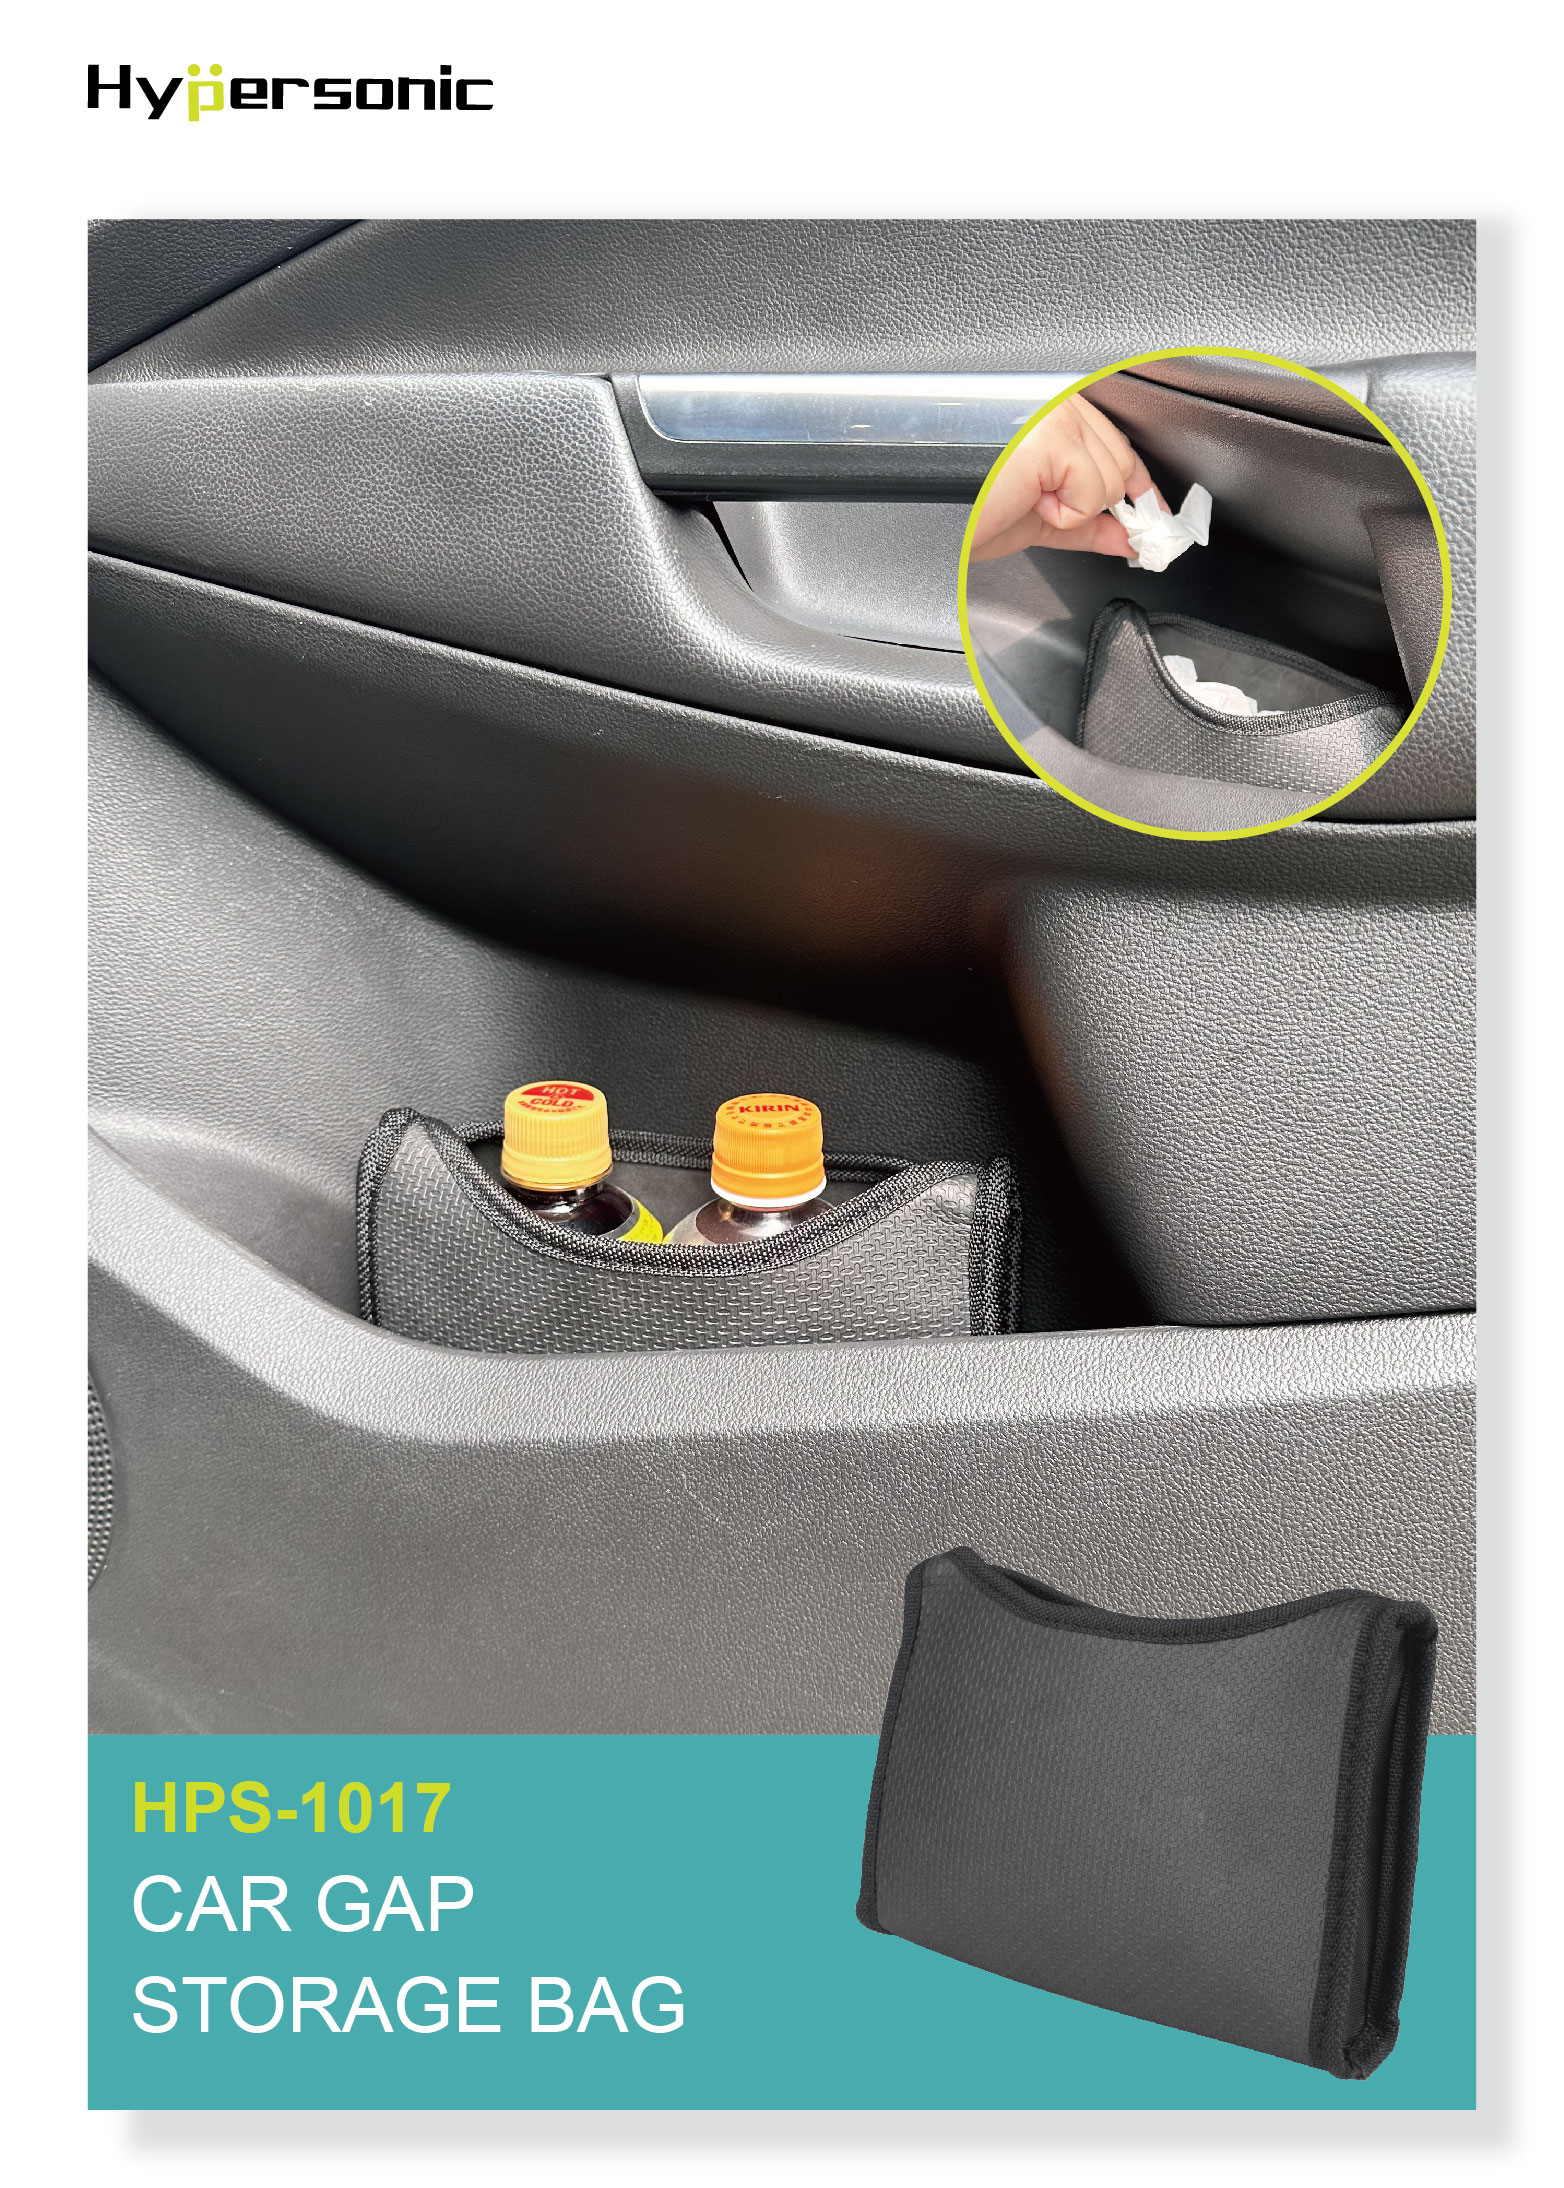 Car Gap Storage Bag HPS-1017